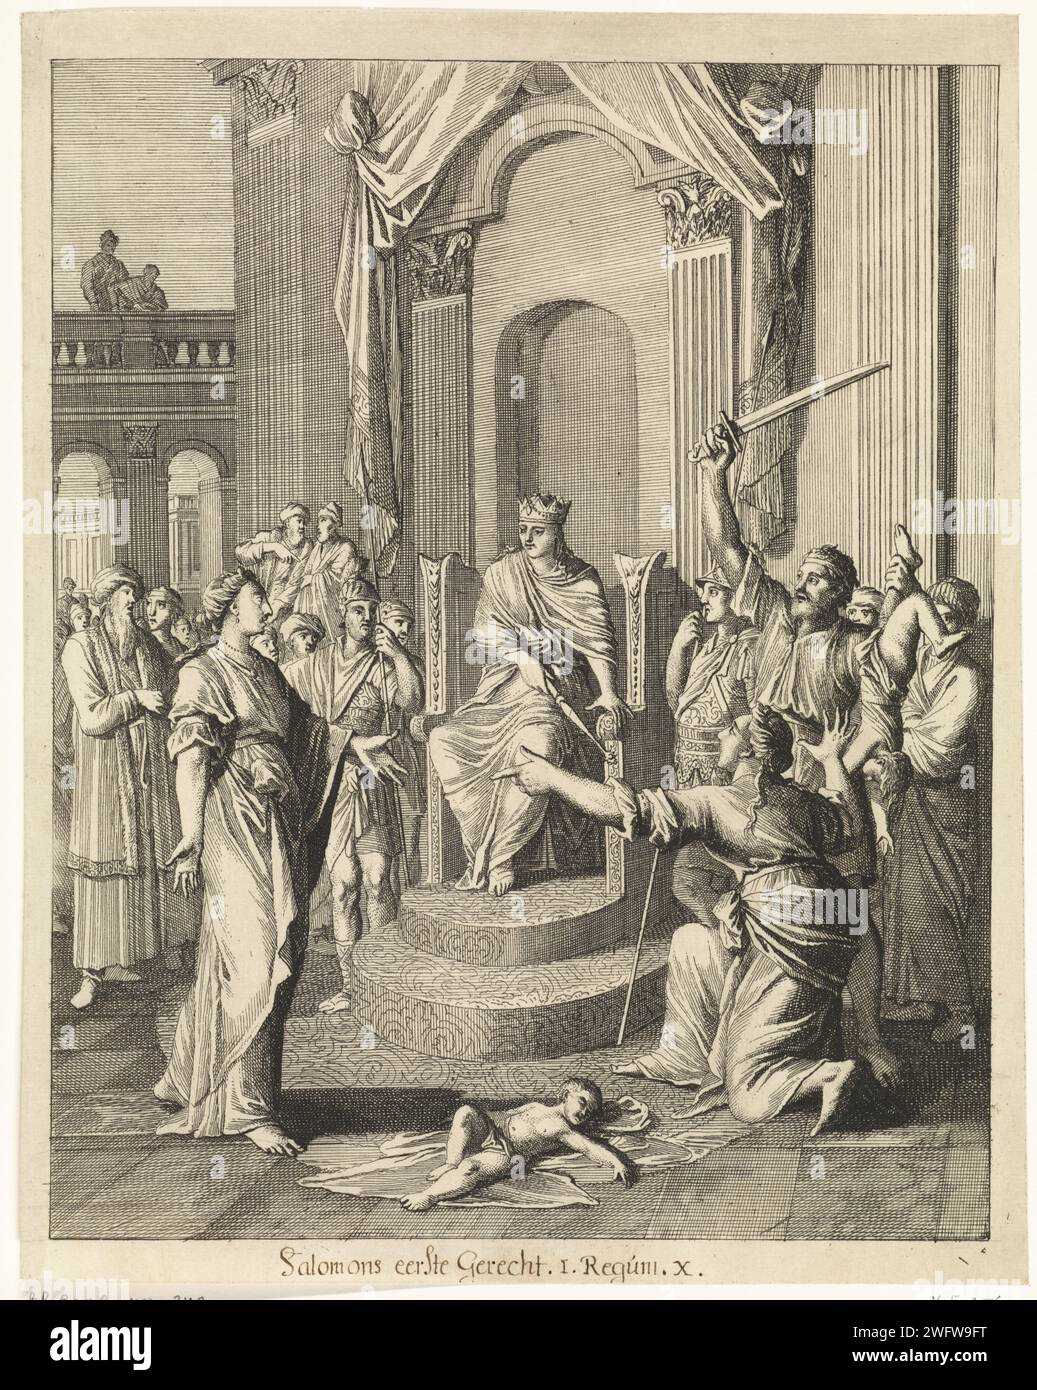 Judgment of Solomon, Caspar Luyken, 1708 print  Nuremberg paper etching the judgement of Solomon (1 Kings 3:16-28) Stock Photo